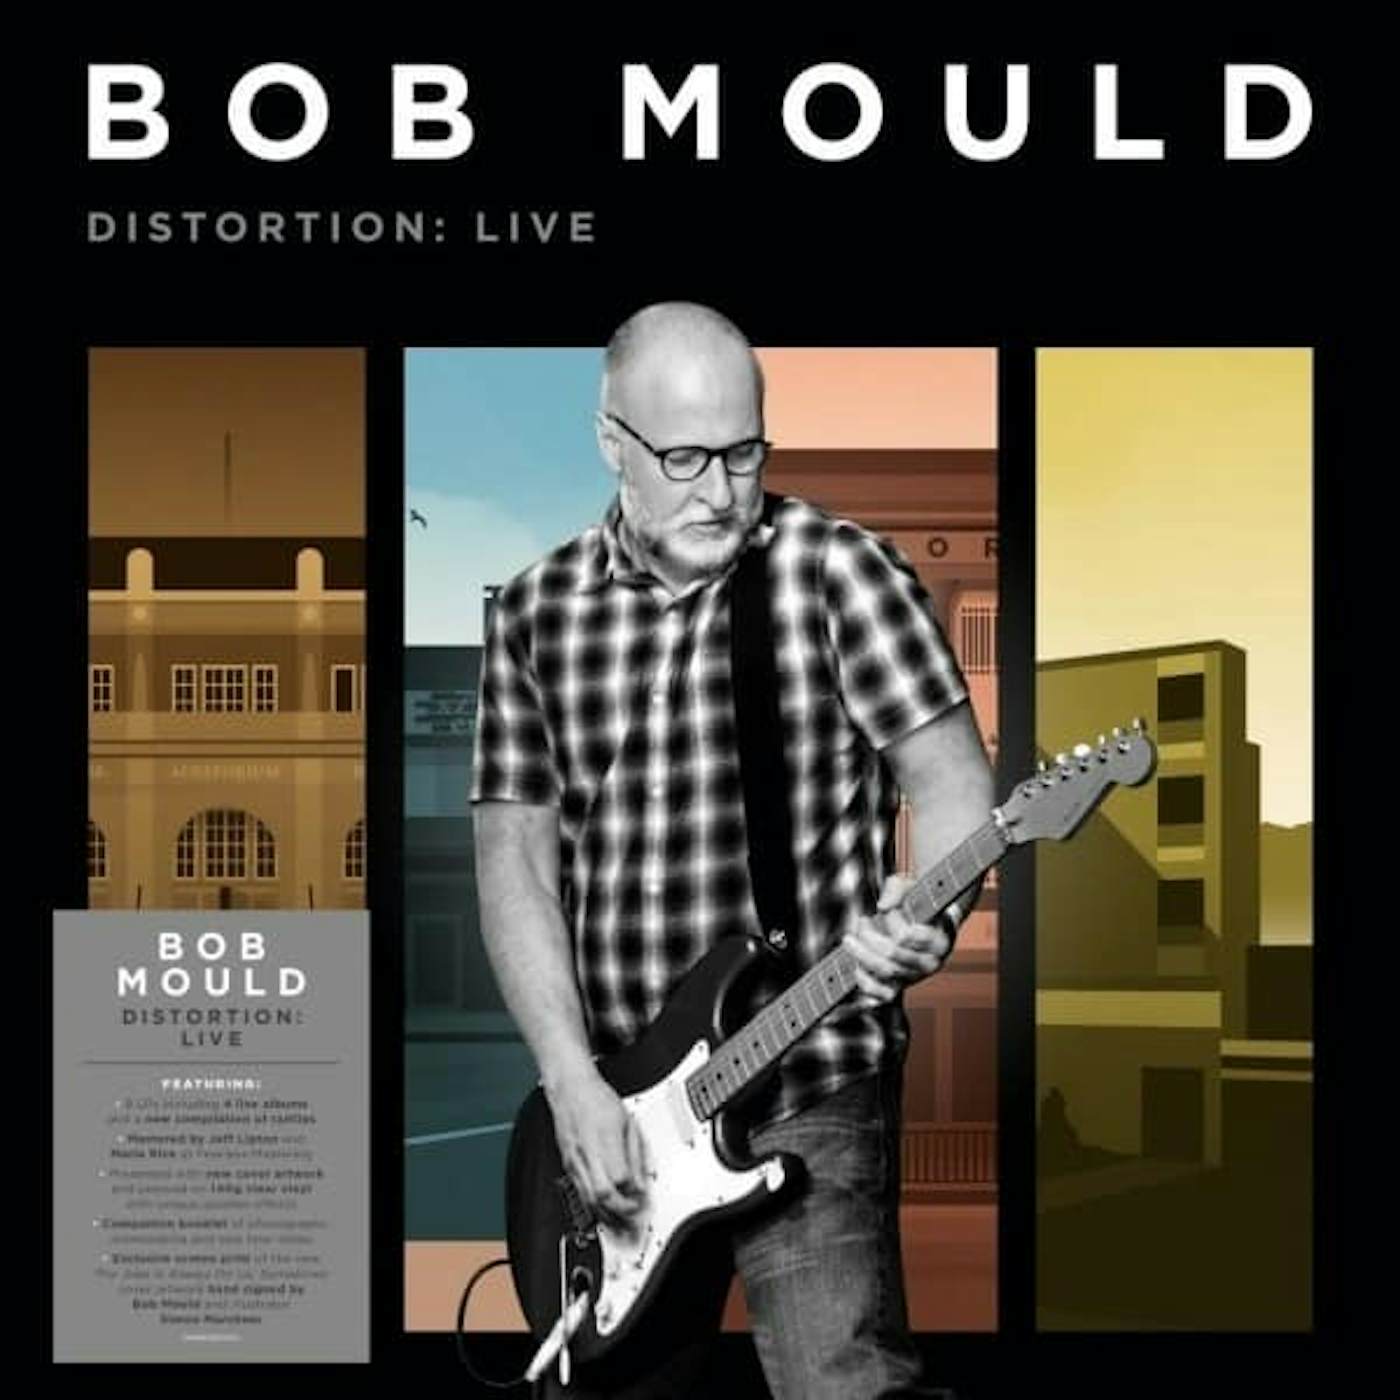 Bob Mould DISTORTION: LIVE Vinyl Record